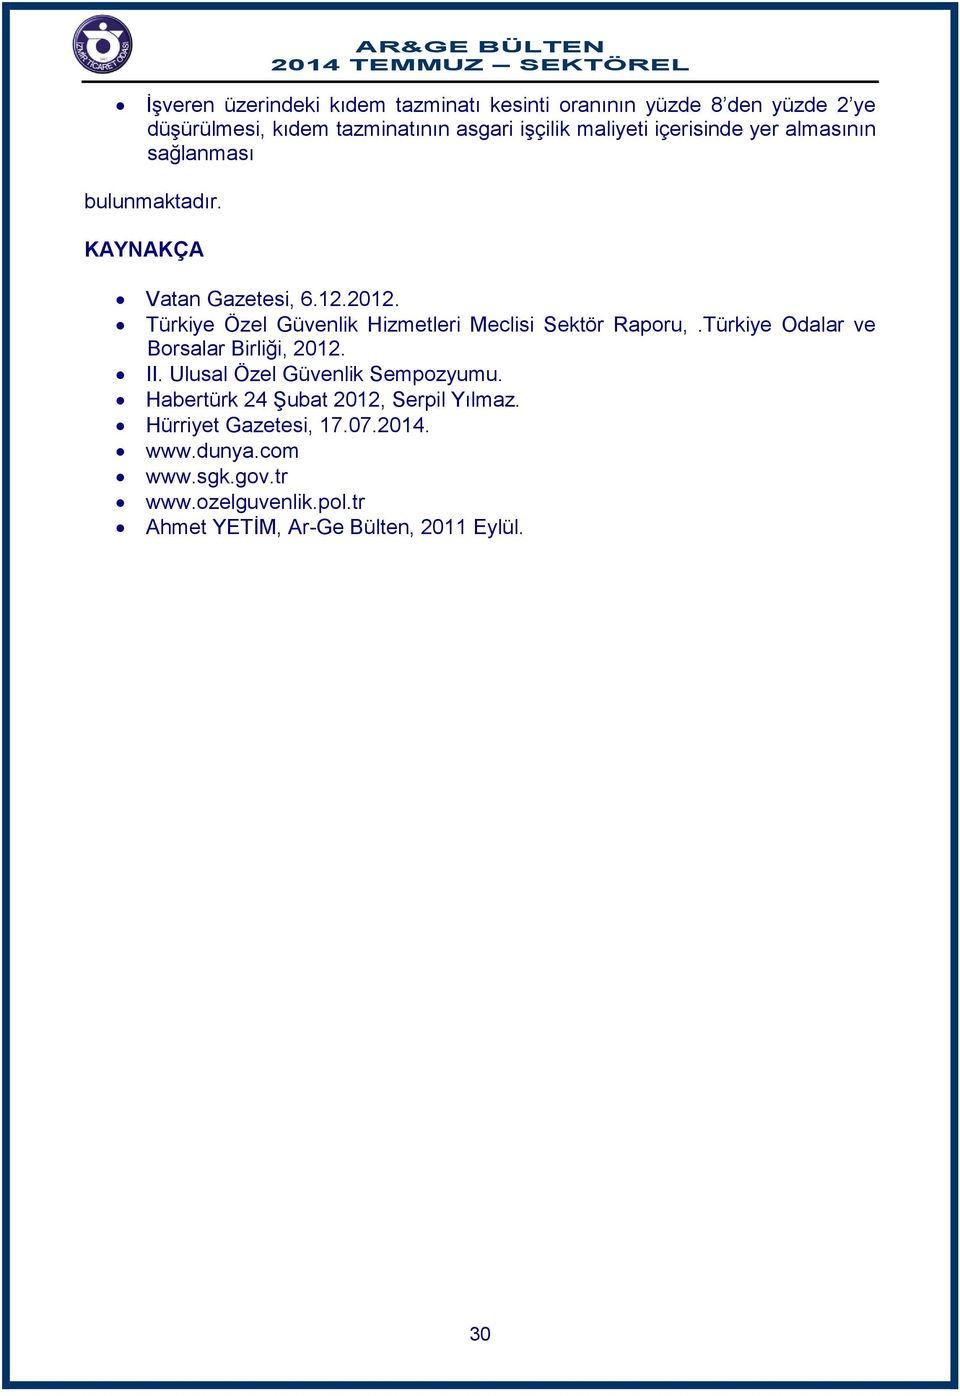 Türkiye Özel Güvenlik Hizmetleri Meclisi Sektör Raporu,.Türkiye Odalar ve Borsalar Birliği, 2012. II.